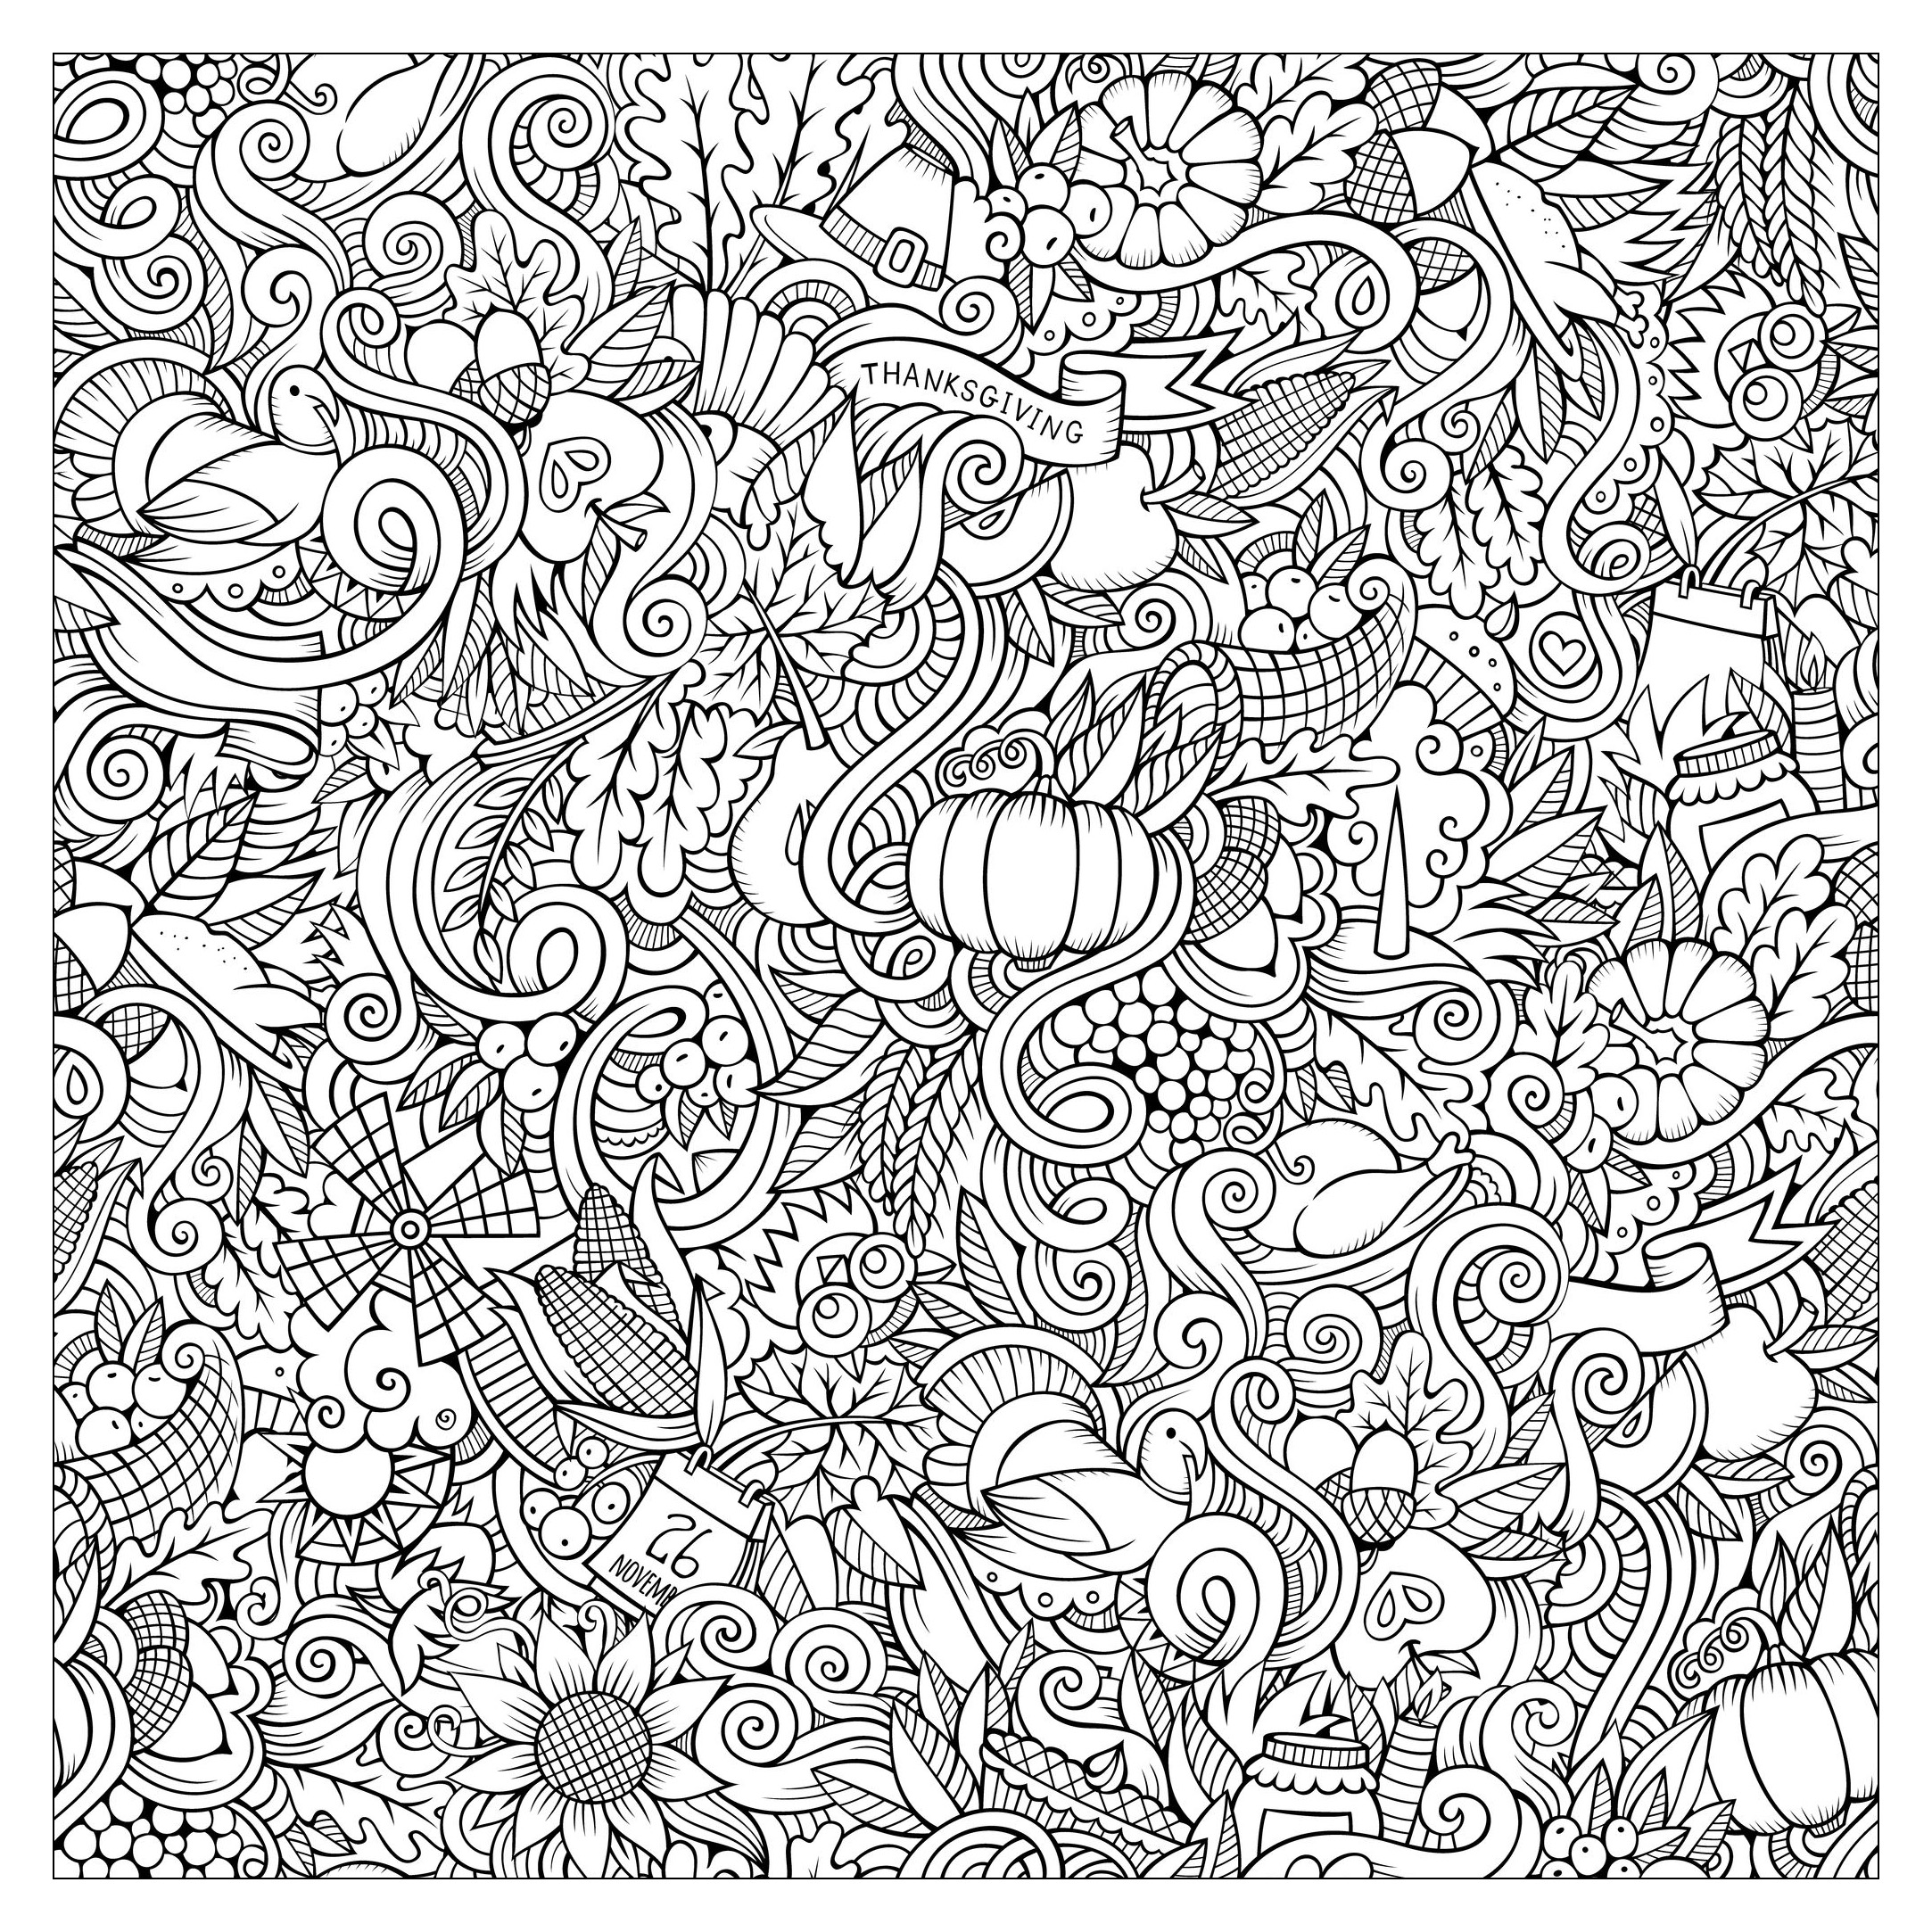 Garabatos dibujados a mano para colorear sobre el tema de Acción de Gracias y el otoño. Símbolos, alimentos (bayas, maíz, calabazas...), flores, pavos.., Artista : Olga Kostenko   Origen : 123rf